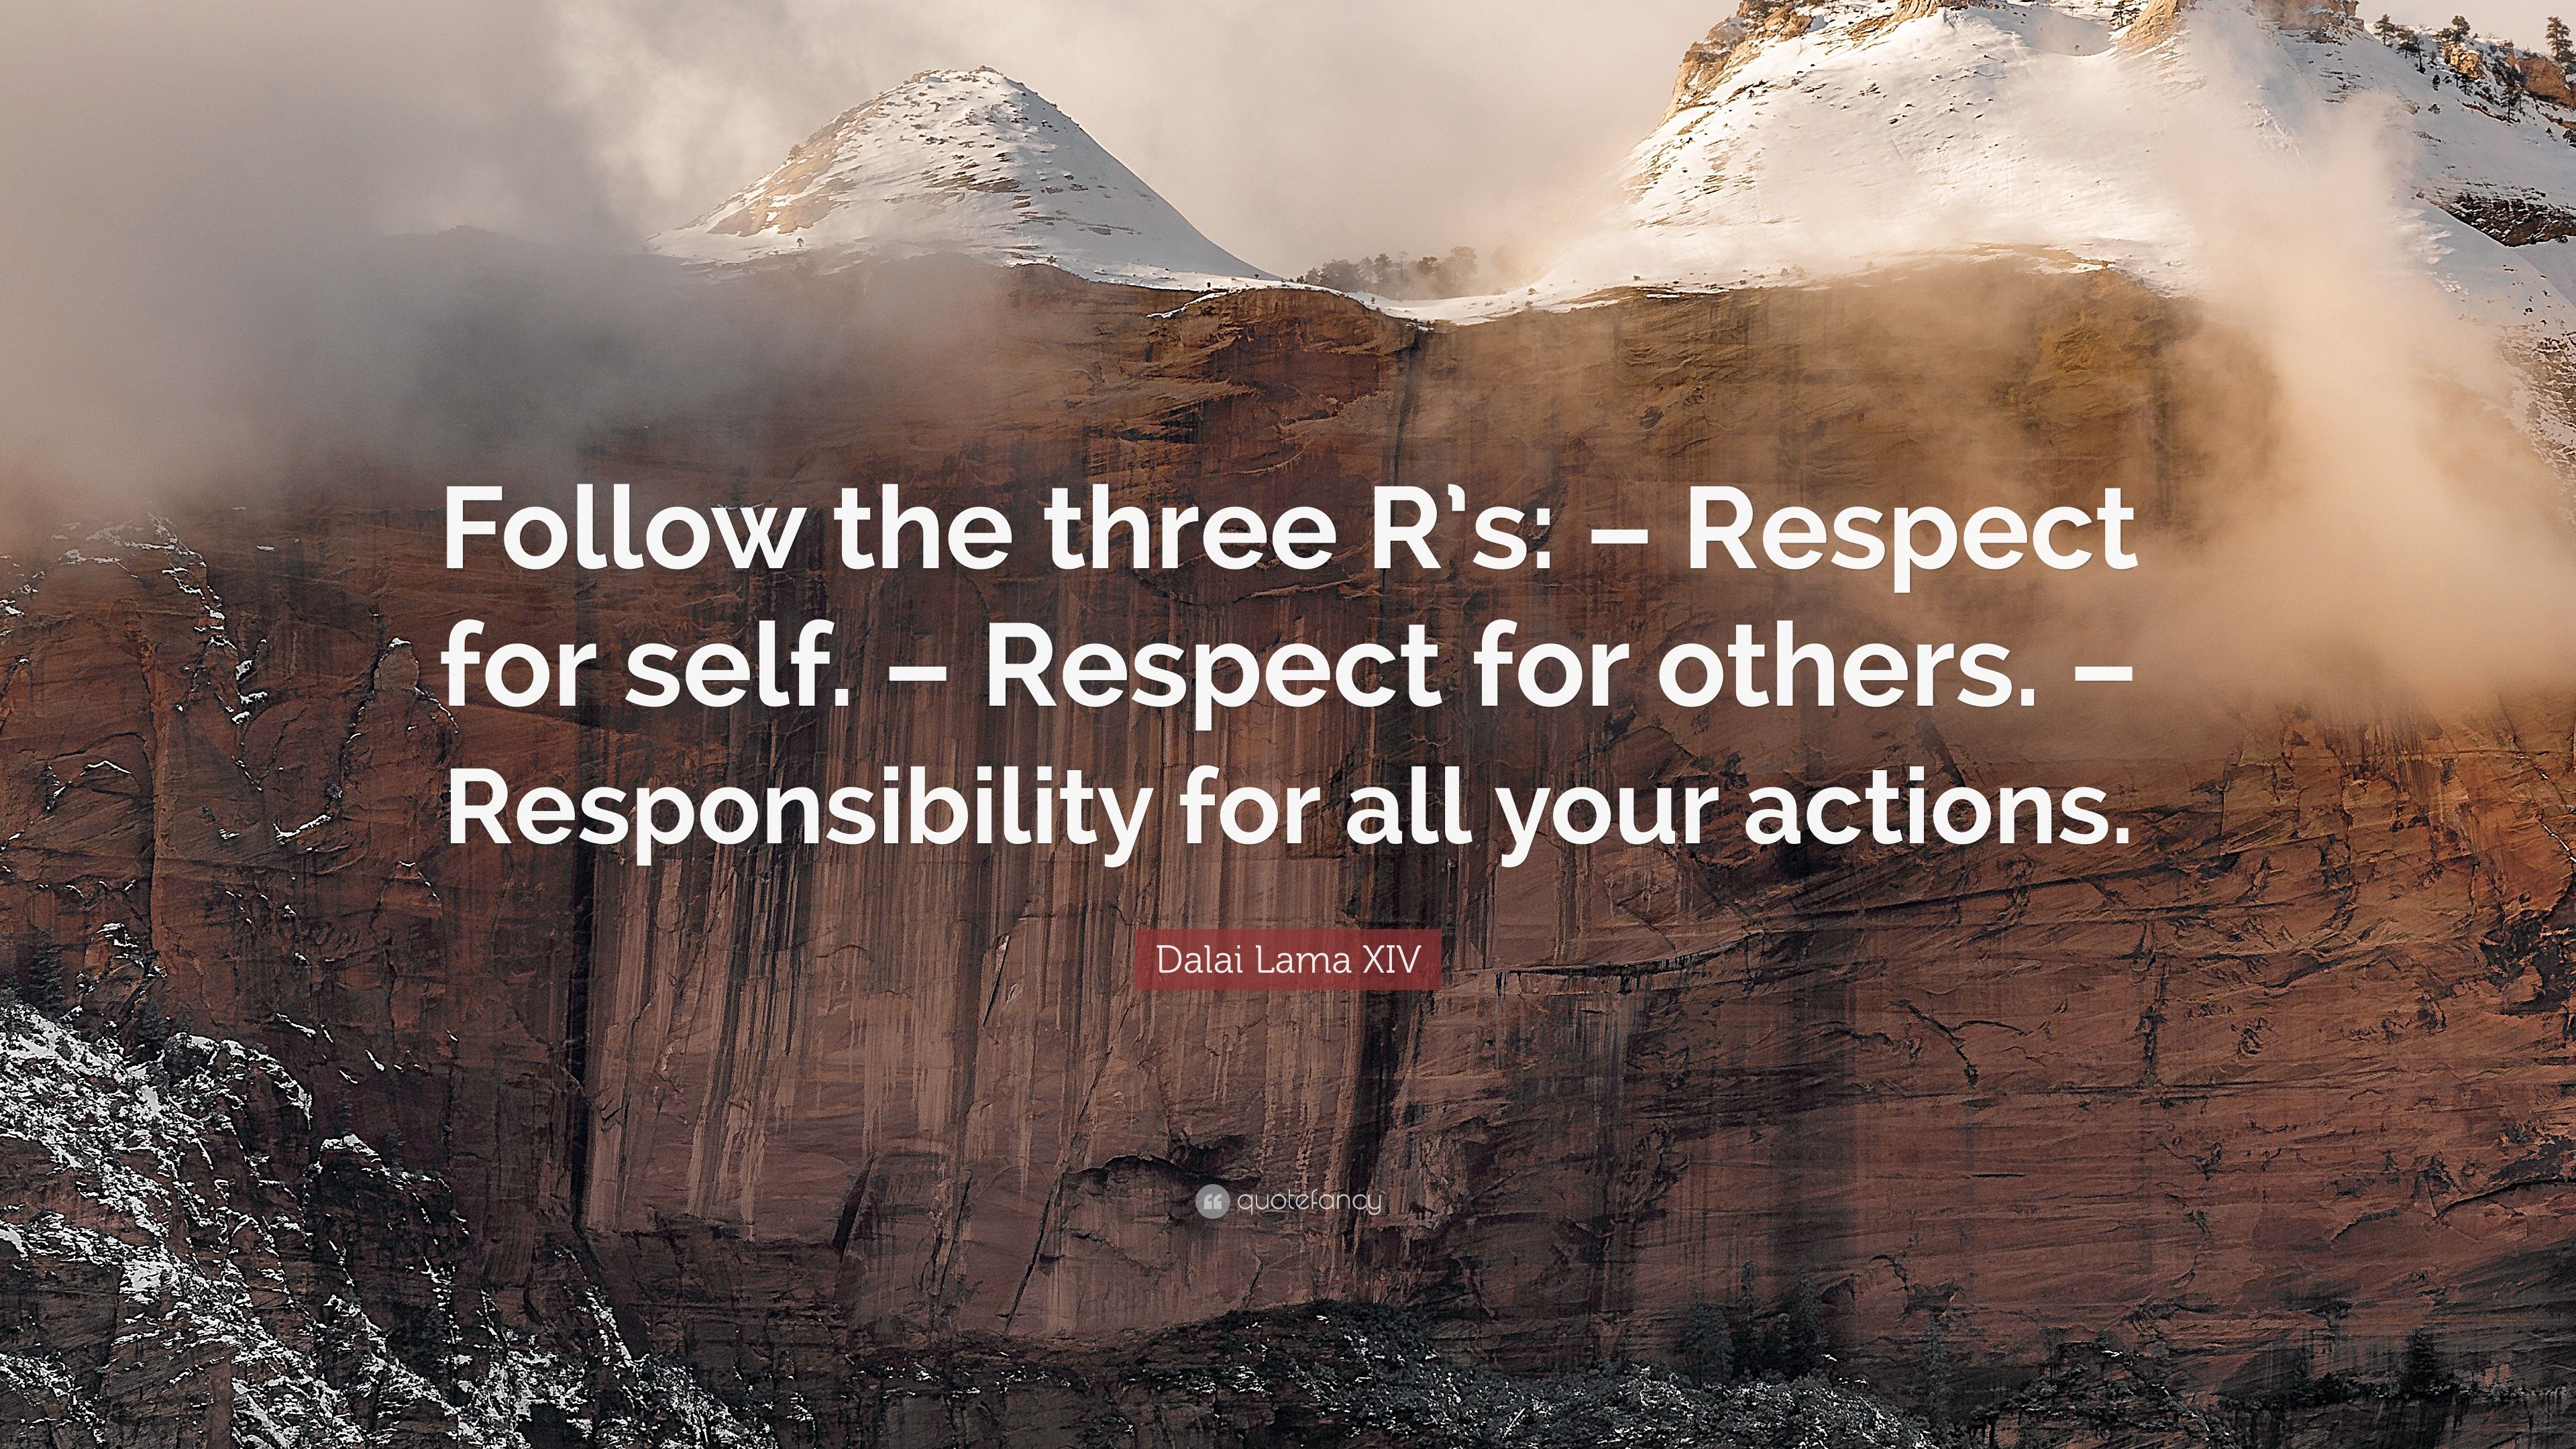 Dalai Lama XIV Quote: “Follow the three R's